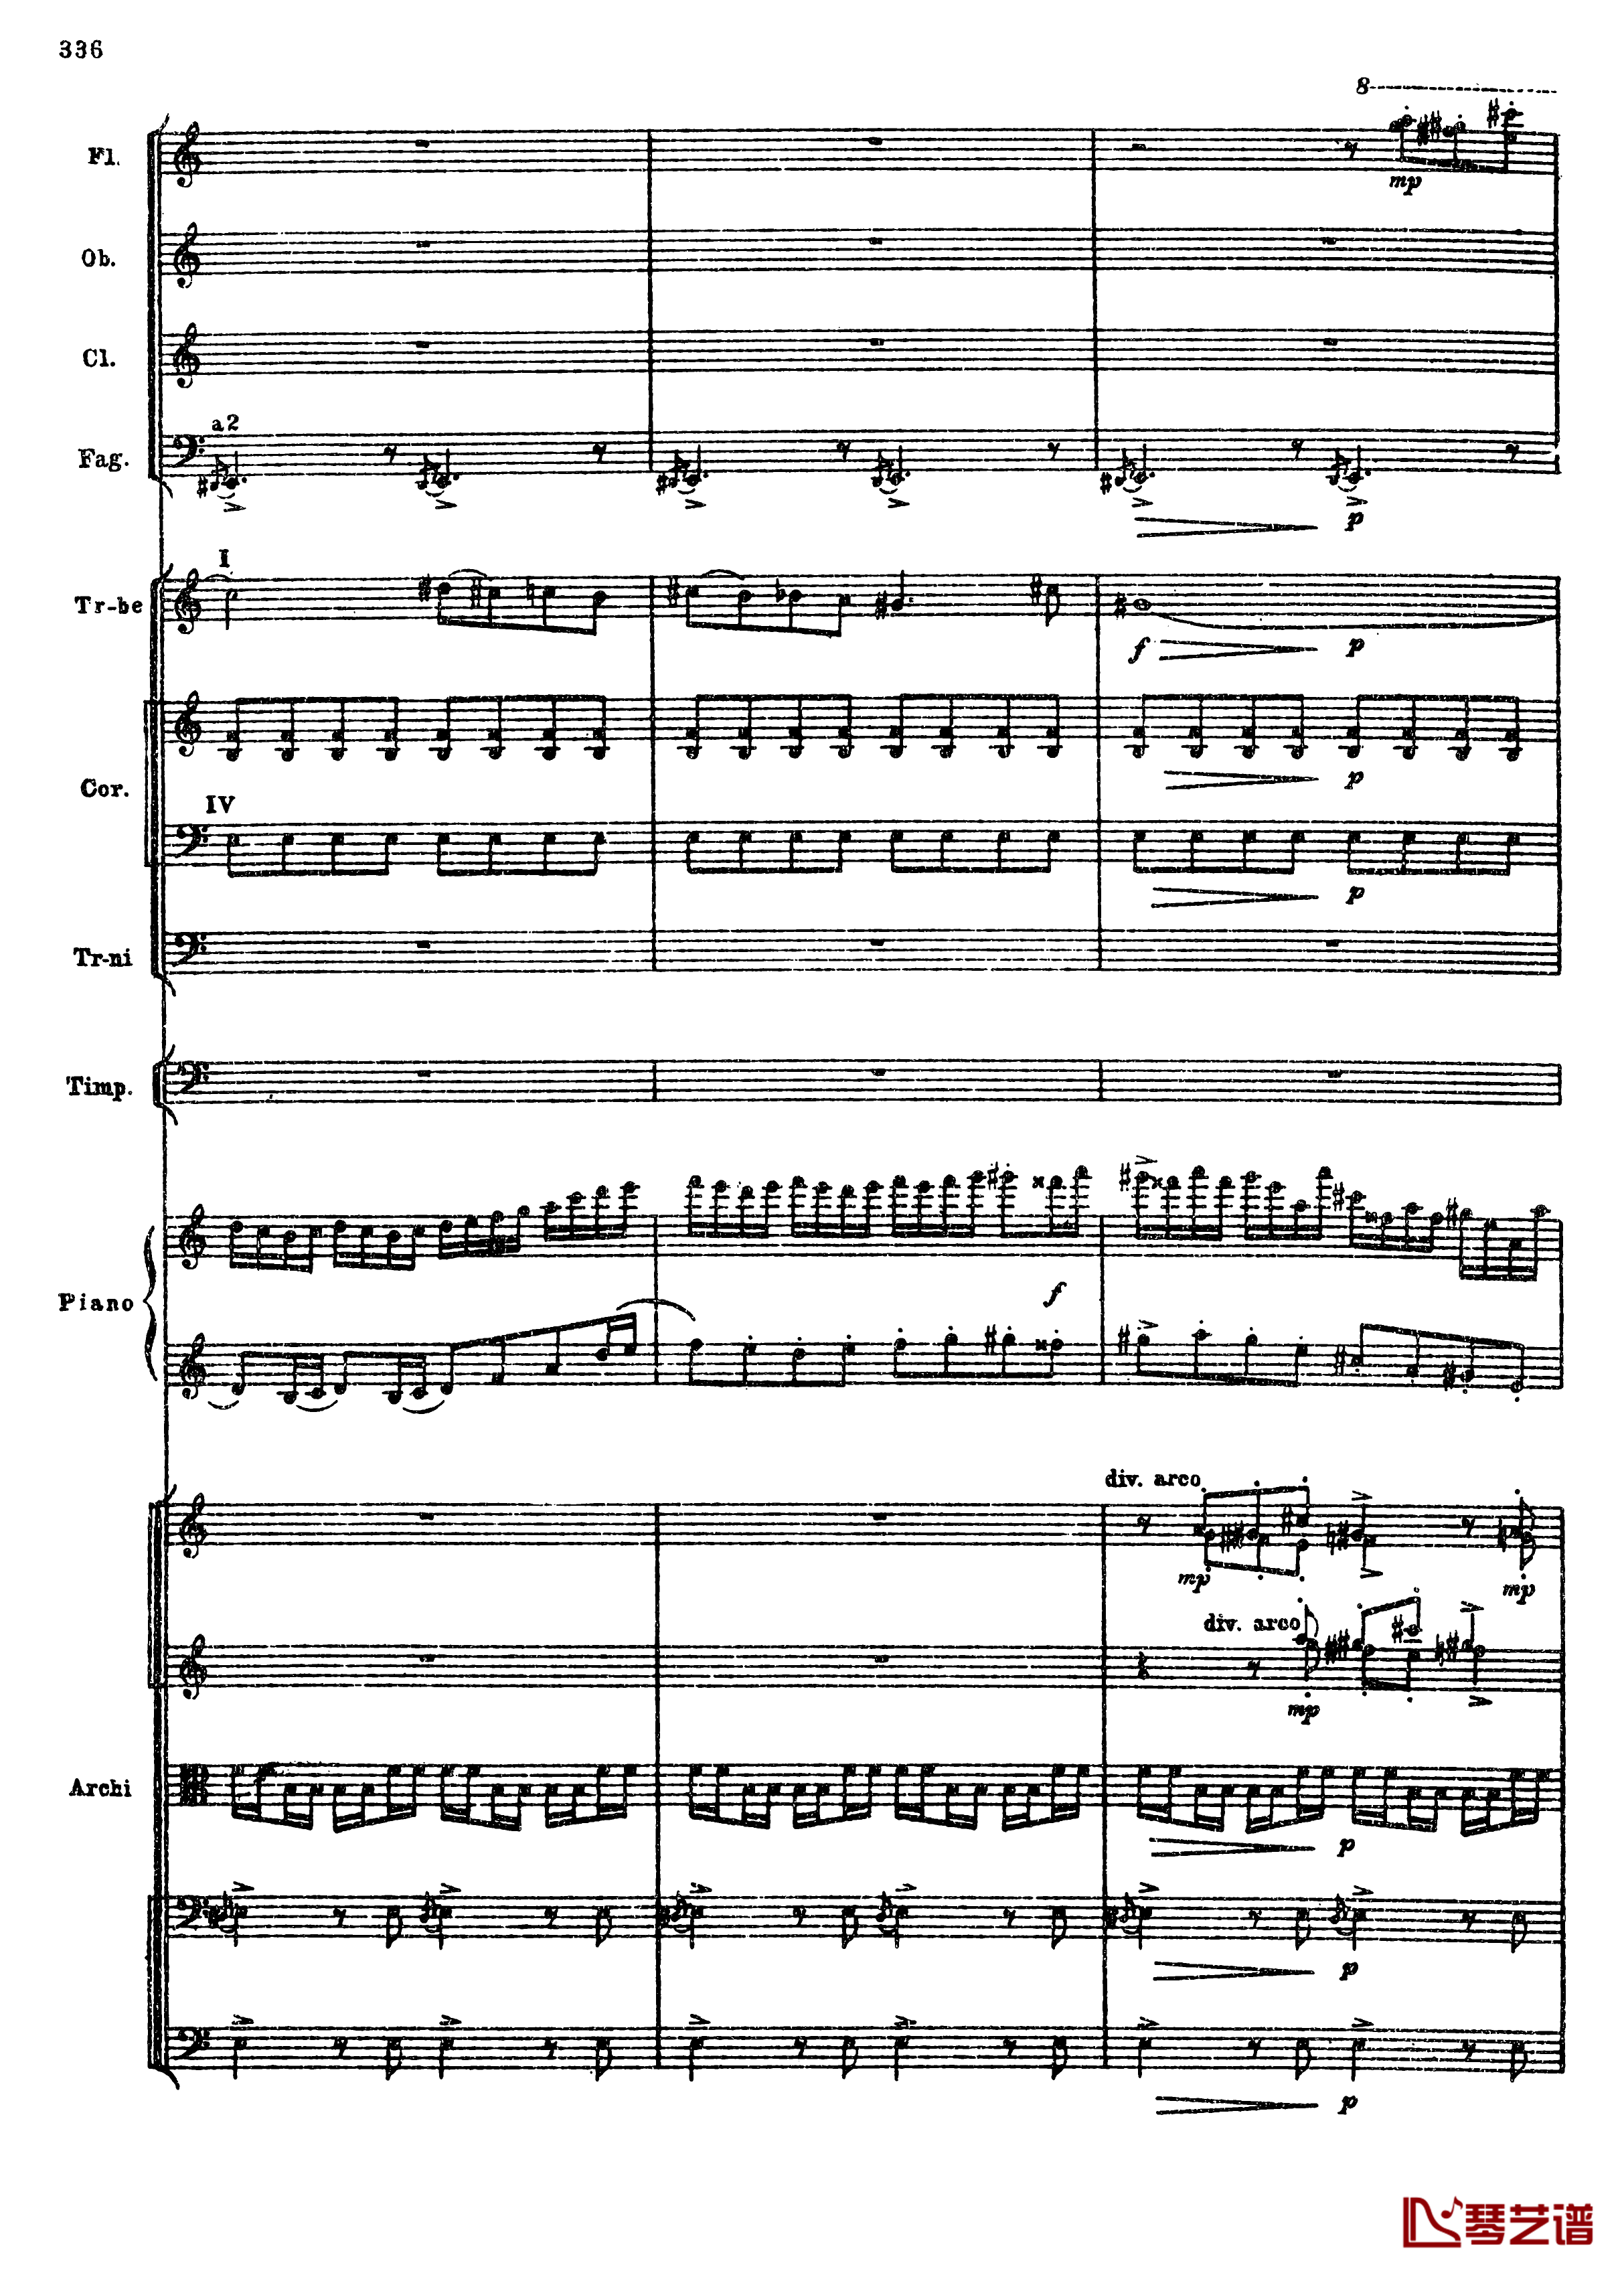 普罗科菲耶夫第三钢琴协奏曲钢琴谱-总谱-普罗科非耶夫68